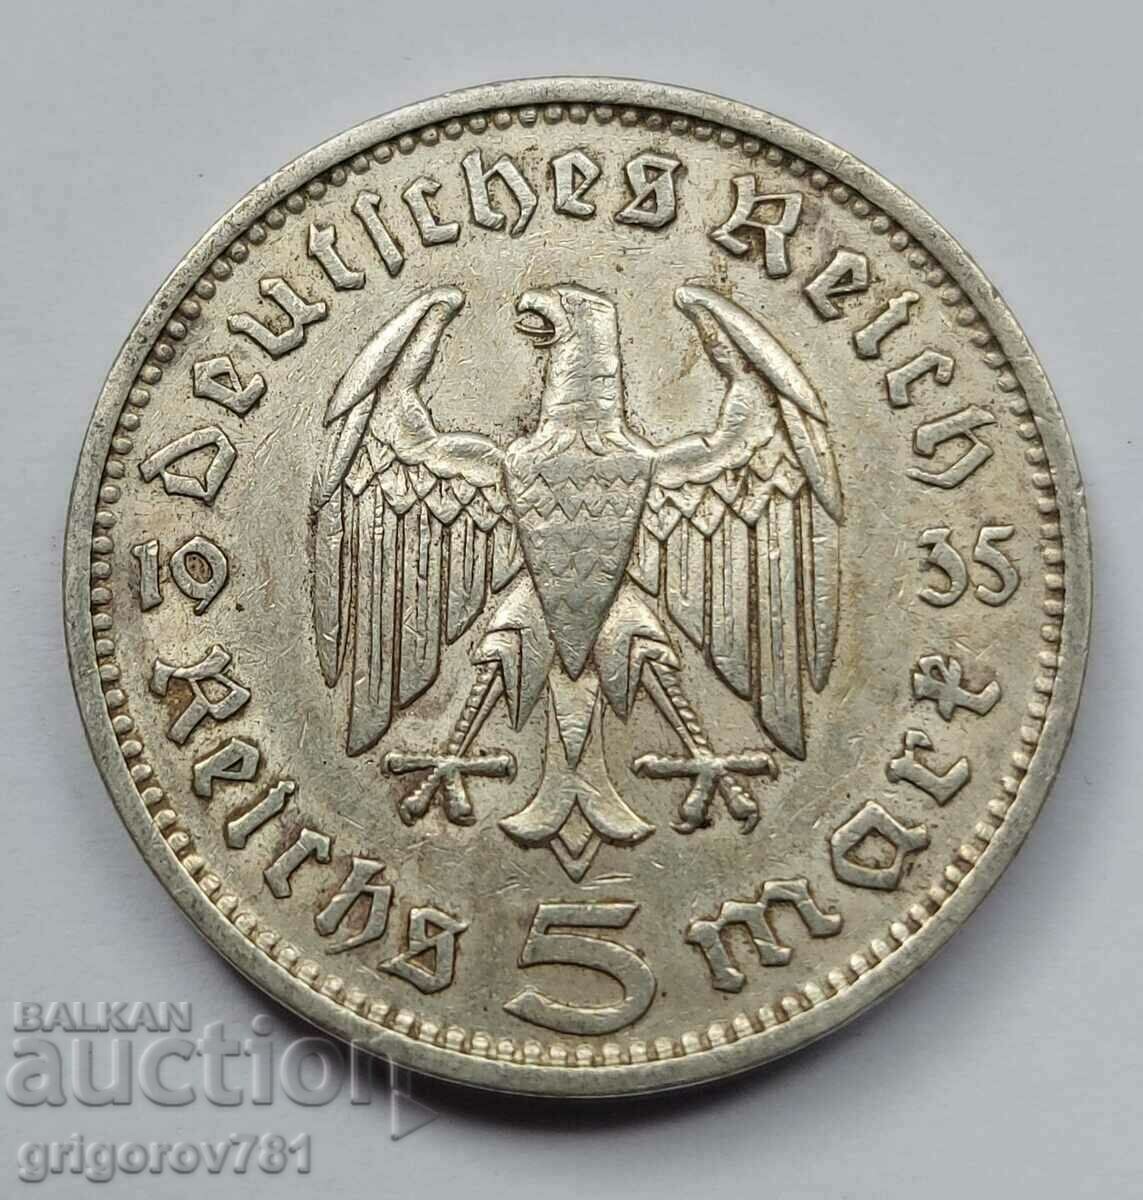 5 Mark Silver Γερμανία 1935 F III Reich Ασημένιο νόμισμα #70